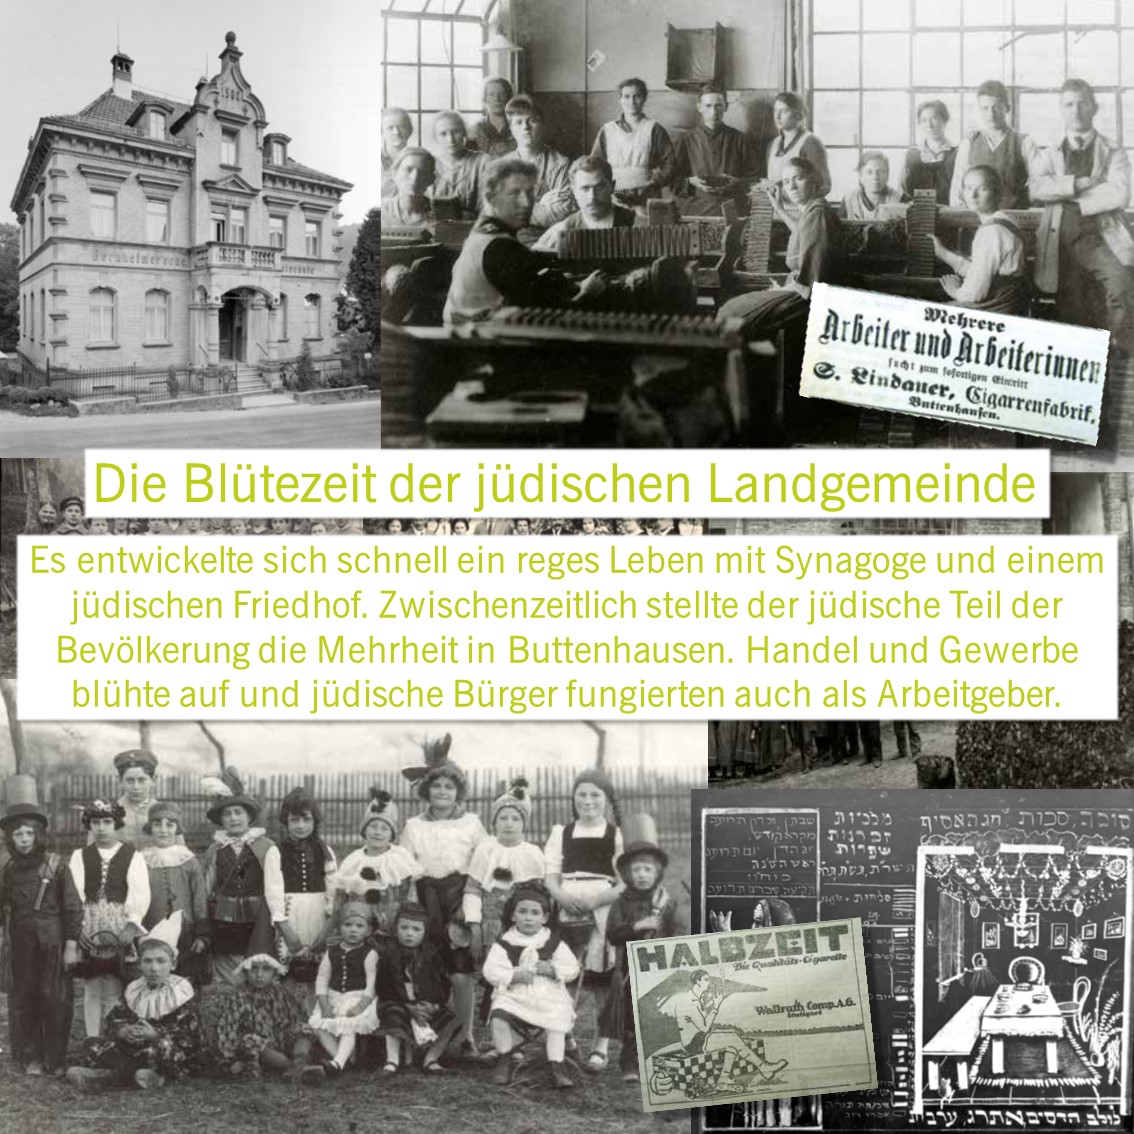 Das Buch Jüdisches Leben in Buttenhausen gibt es in der Touristik Information Münsingen im Biosphärengebiet Schwäbische Alb. Mehrere historische Bilder in schwarz-weiß. Davor steht Text.